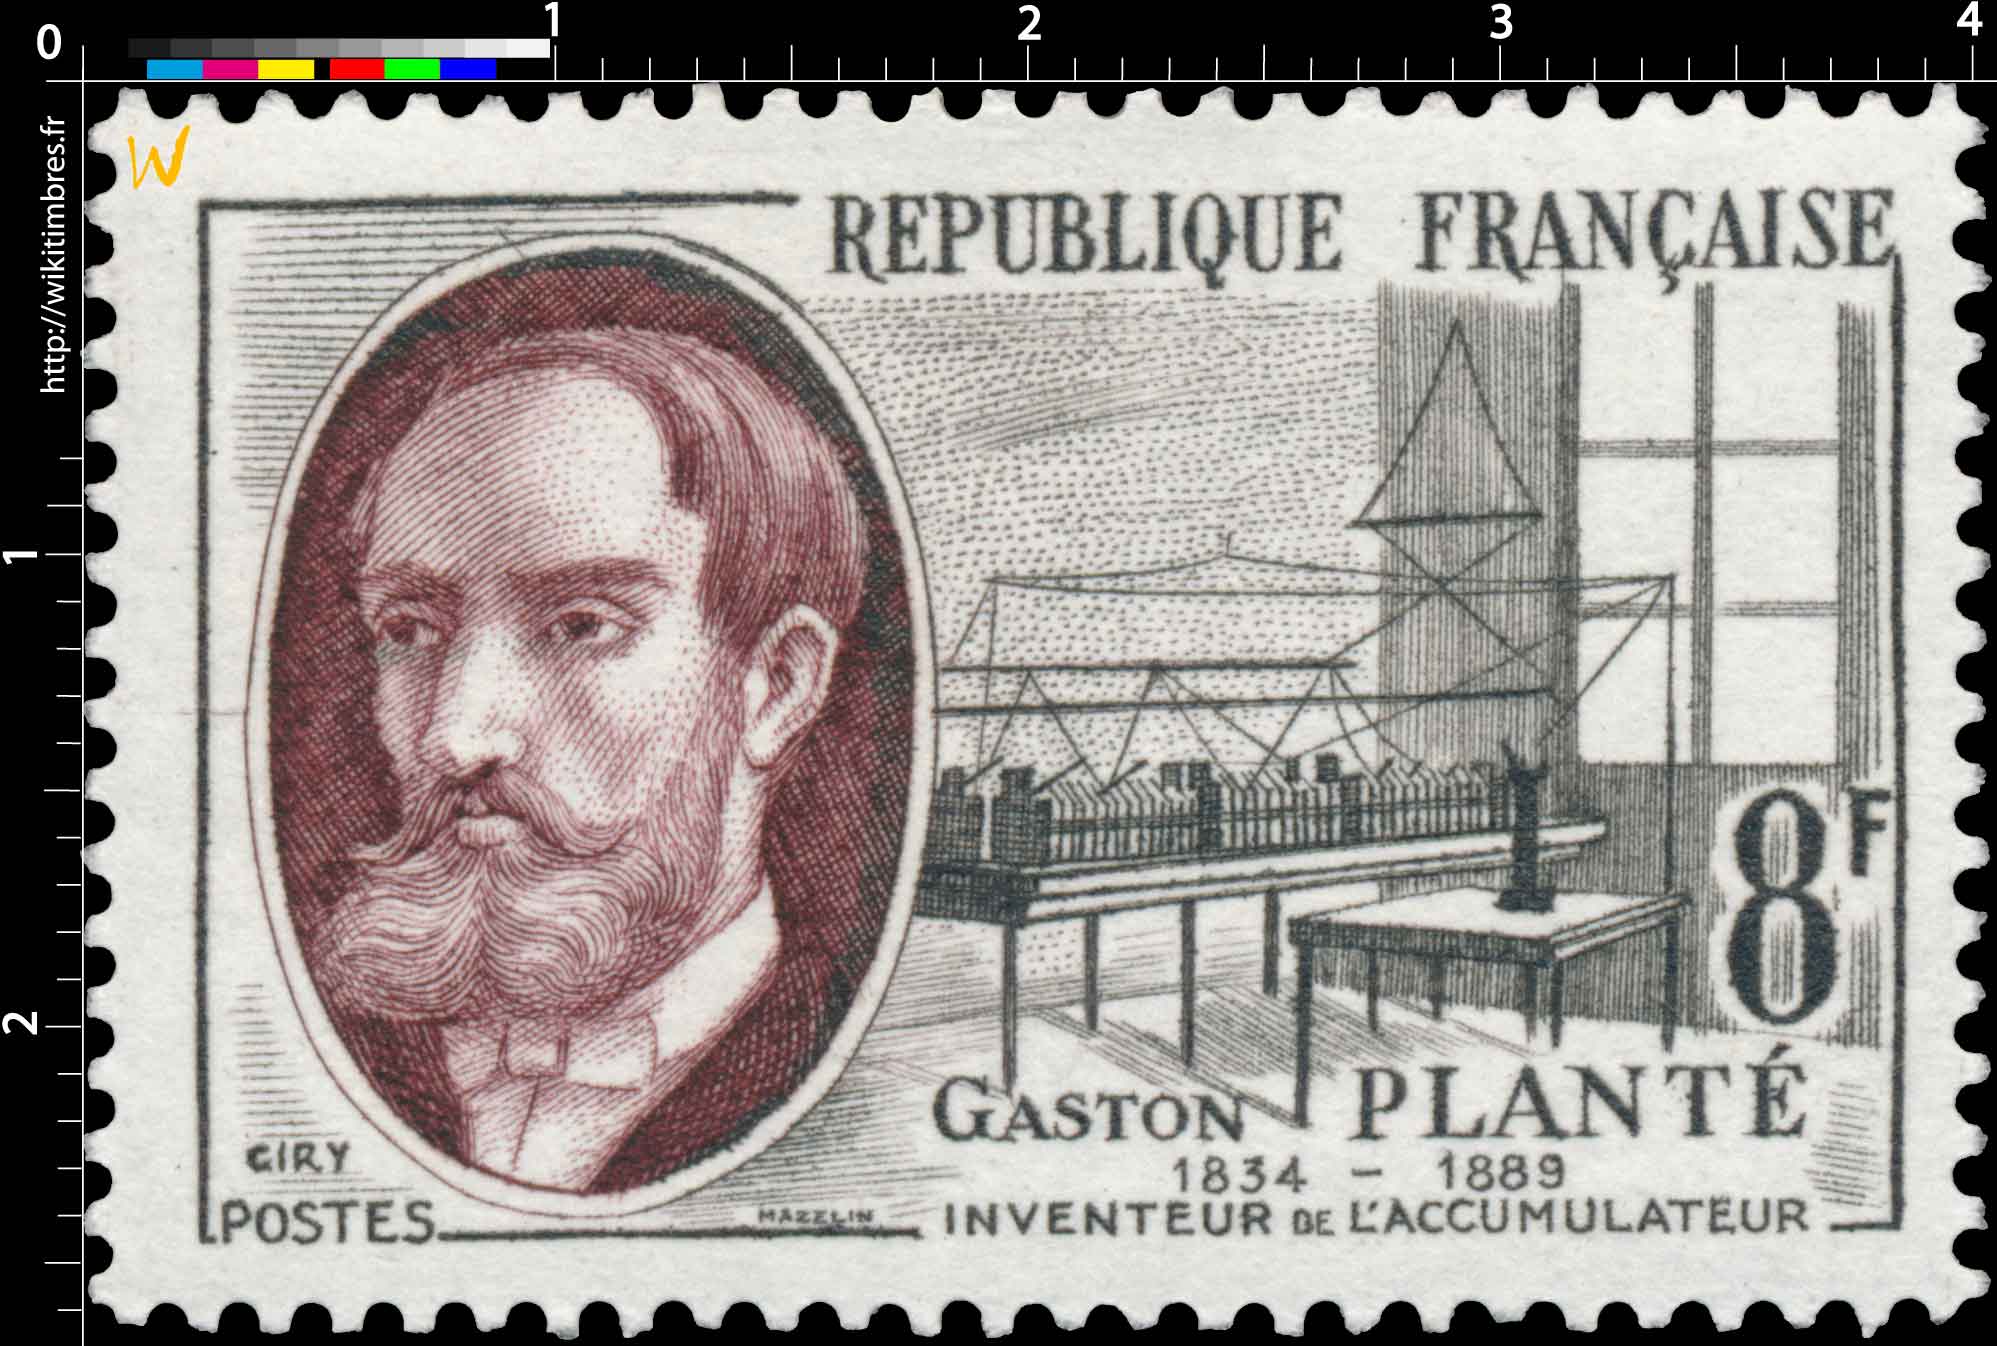 GASTON PLANTÉ 1834-1889 INVENTEUR DE L’ACCUMULATEUR